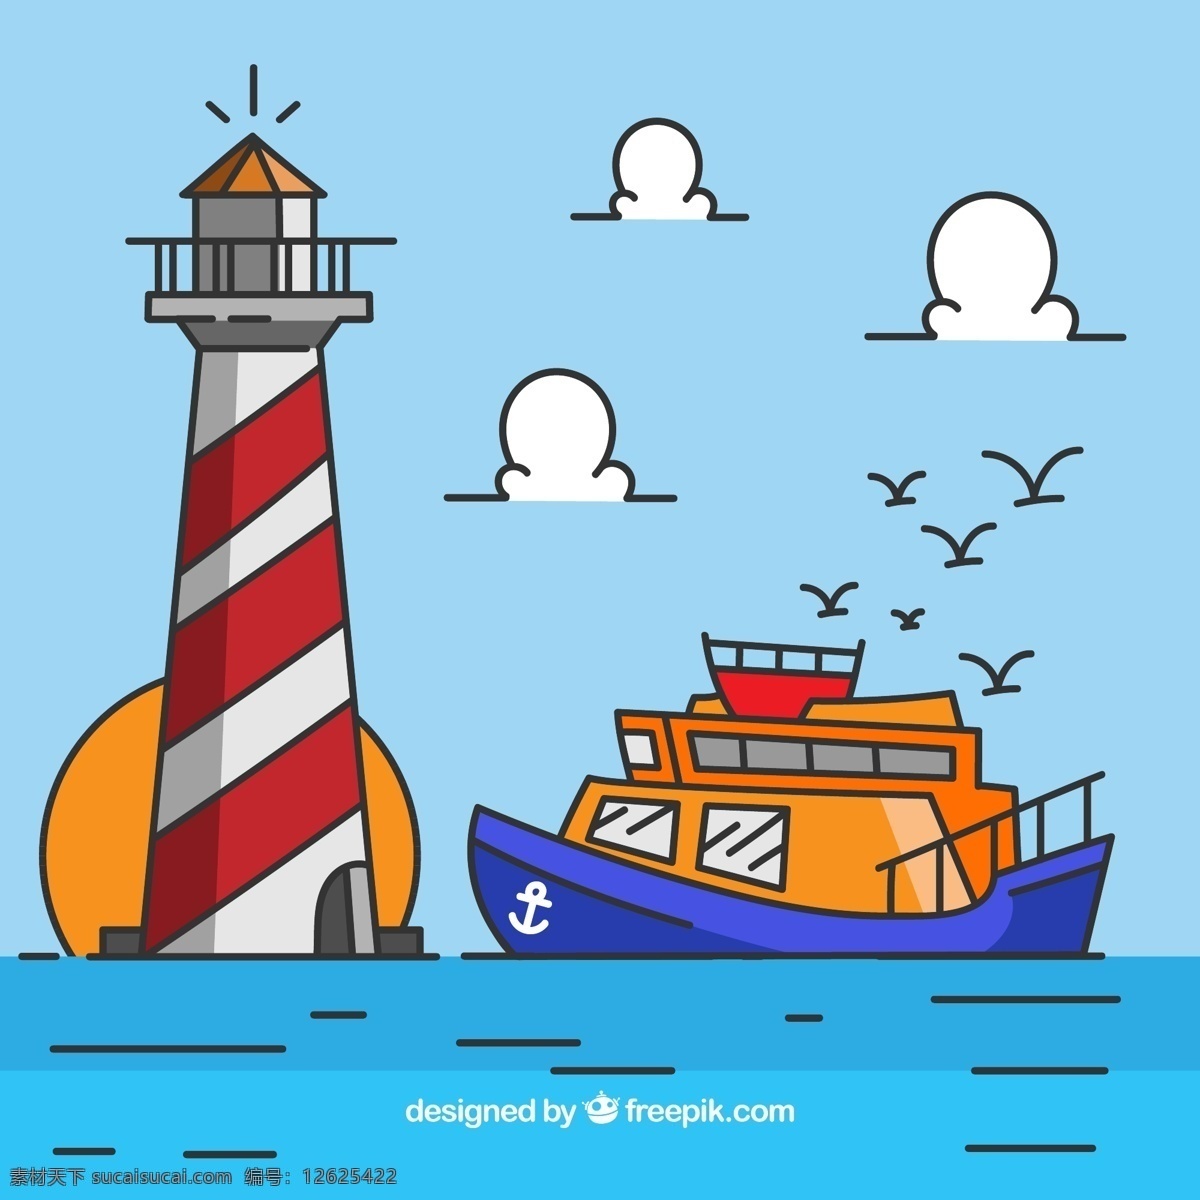 彩绘 海上 灯塔 船舶 矢量 彩色 大海 卡通 风景 插画